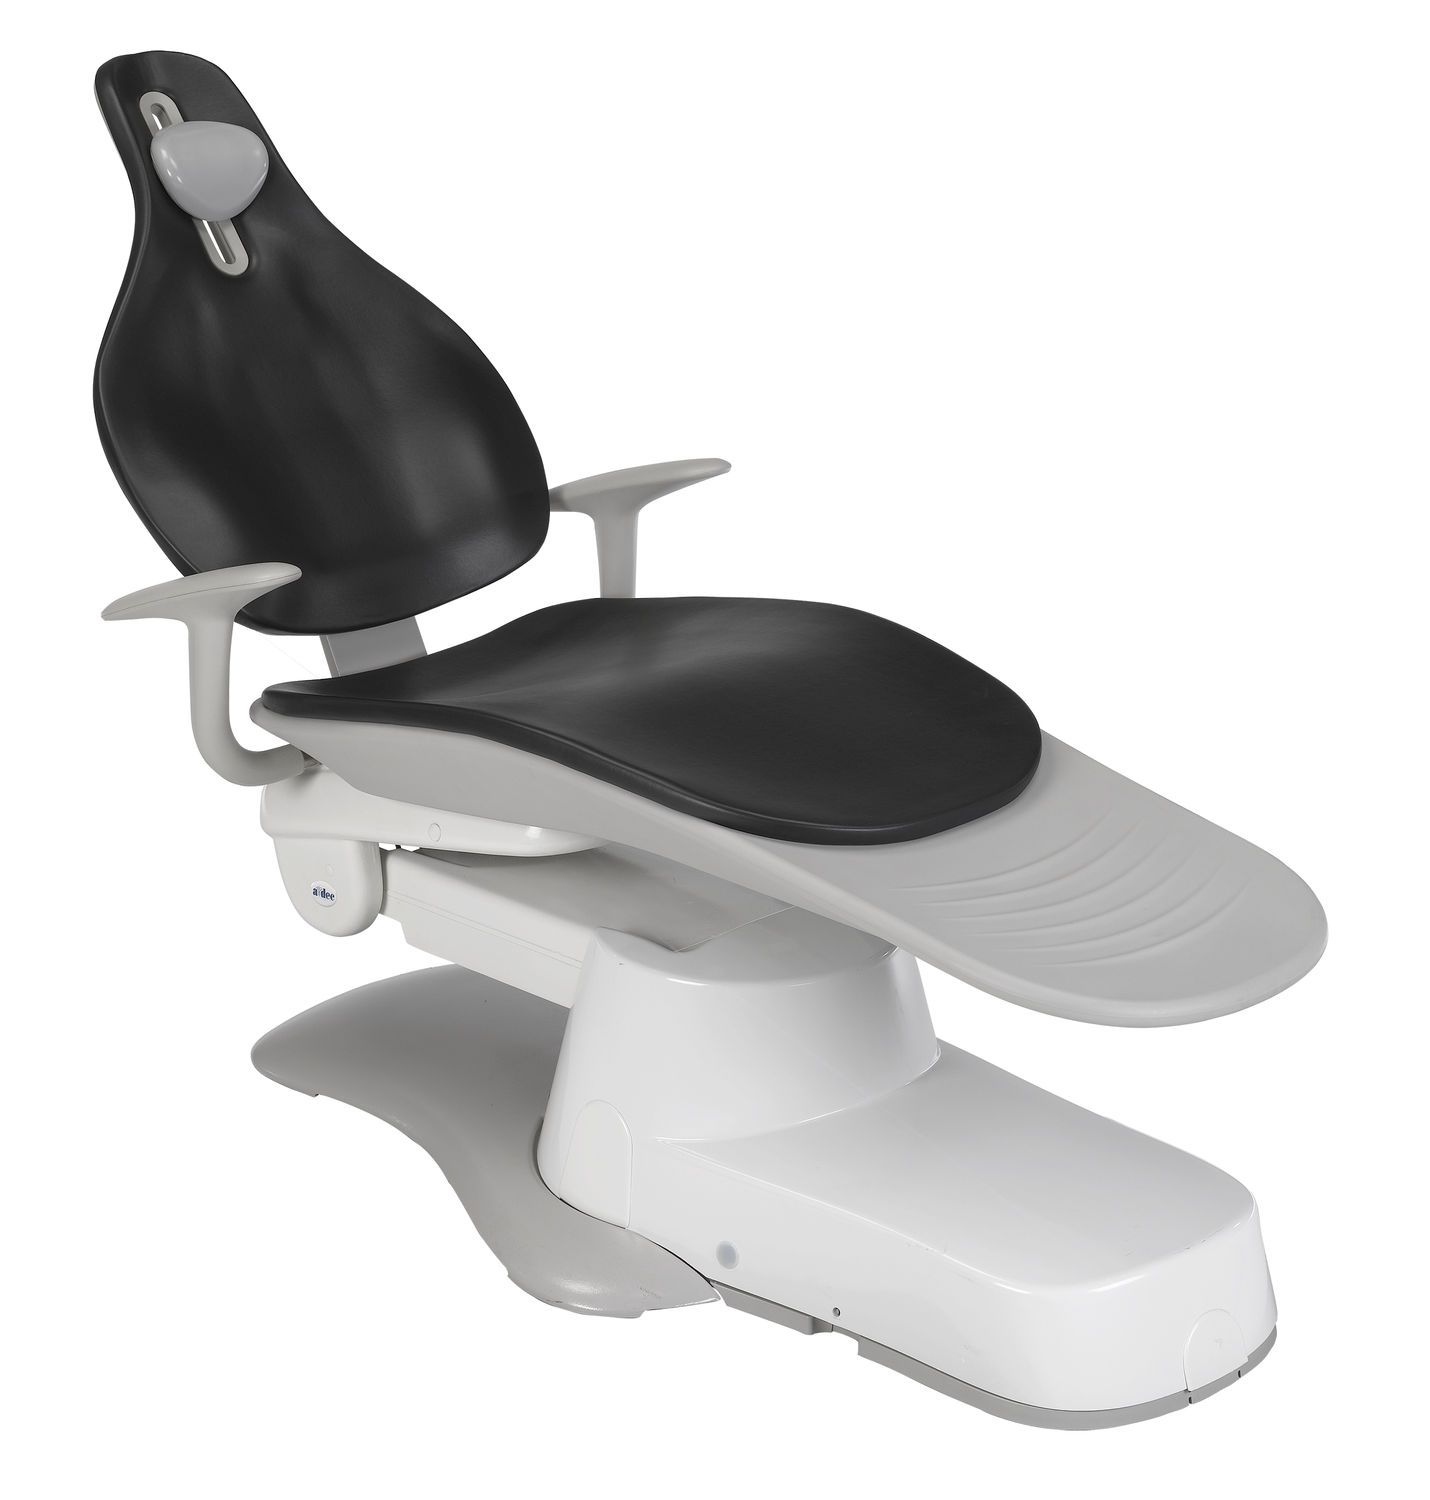 Dental treatment unit with hydraulic chair A-dec 300 A-dec